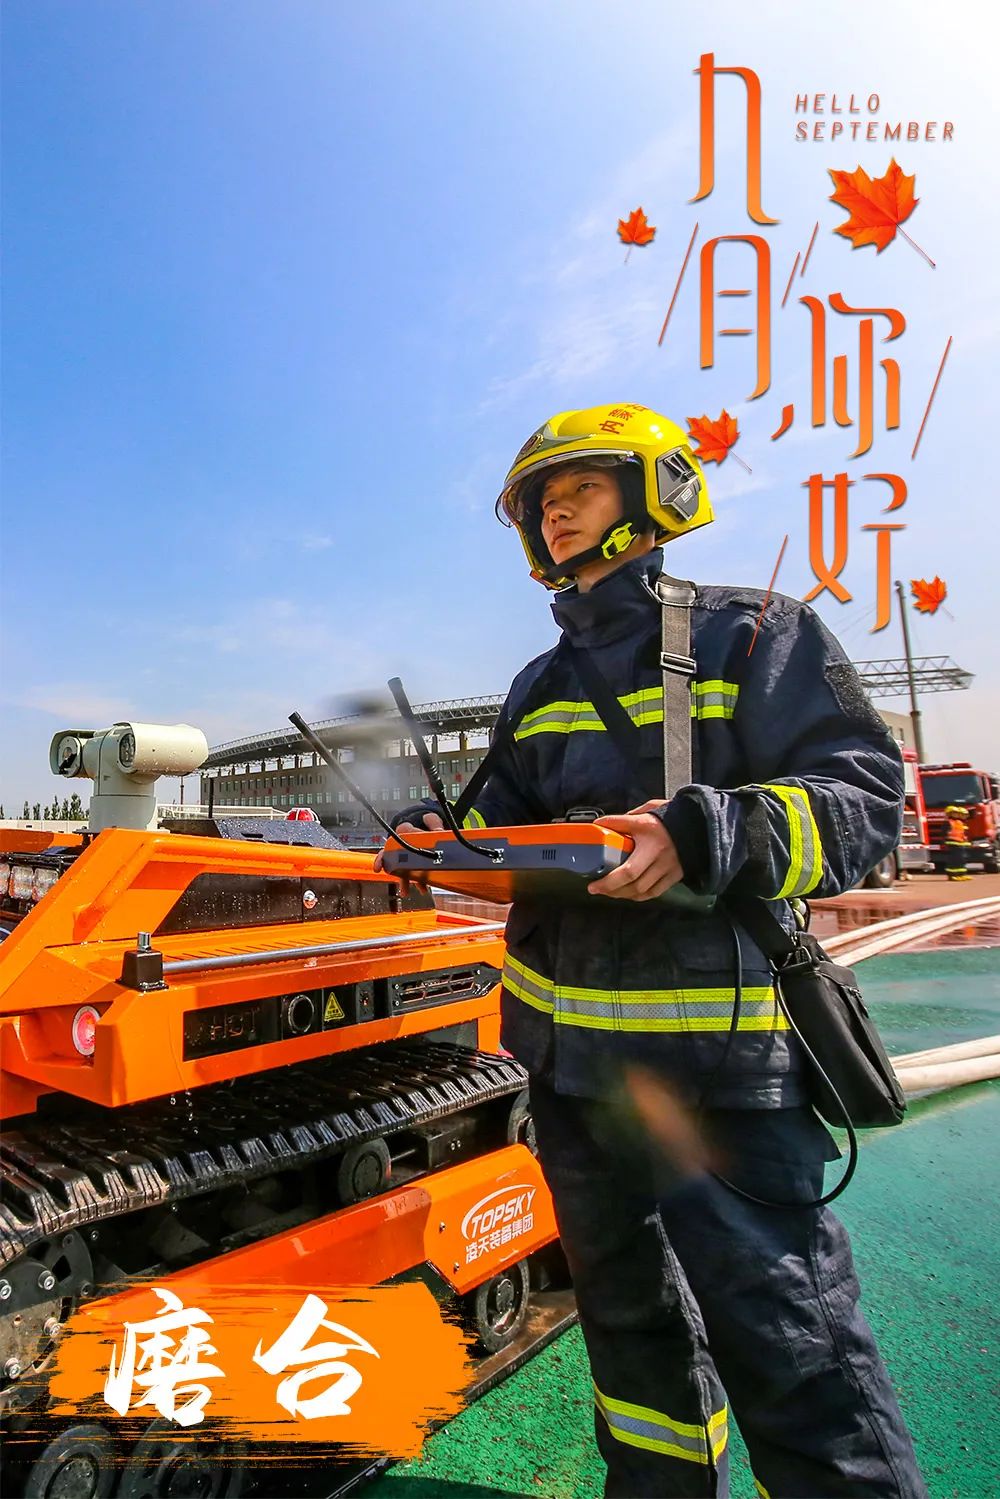 消防员日历写真中国图片